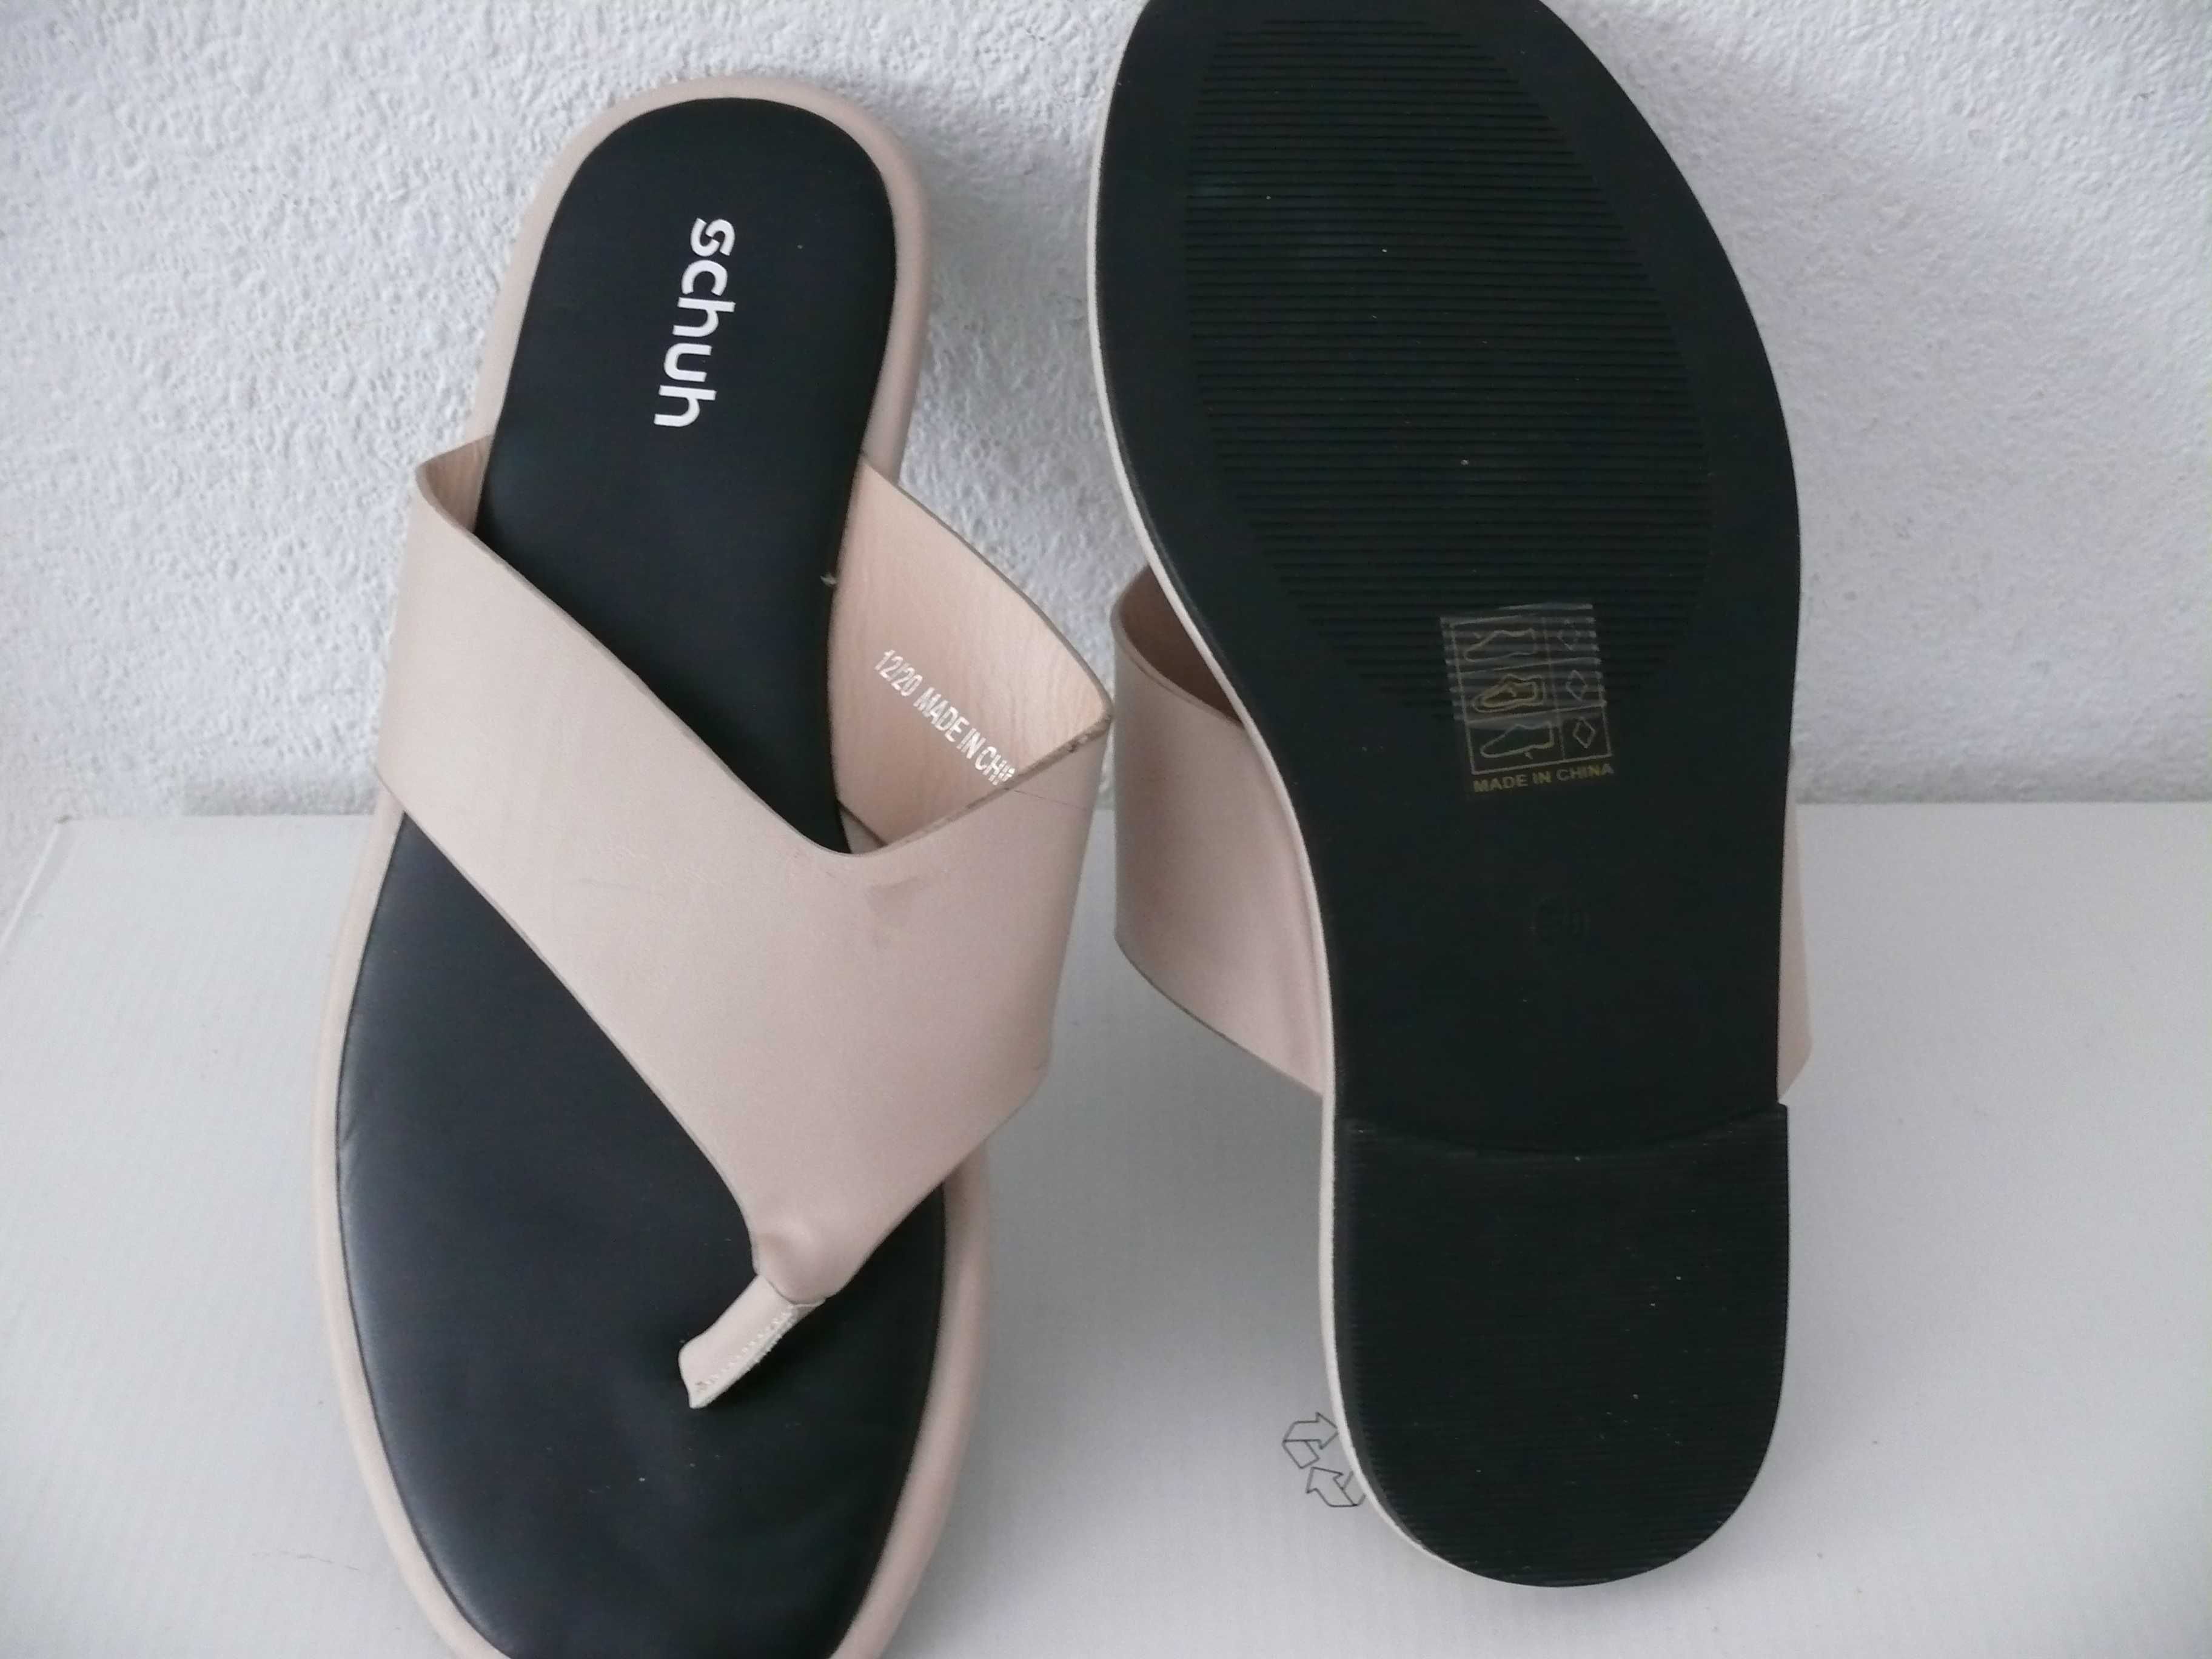 Nowe klapki damskie japonki, firmy "Schuh" roz.39